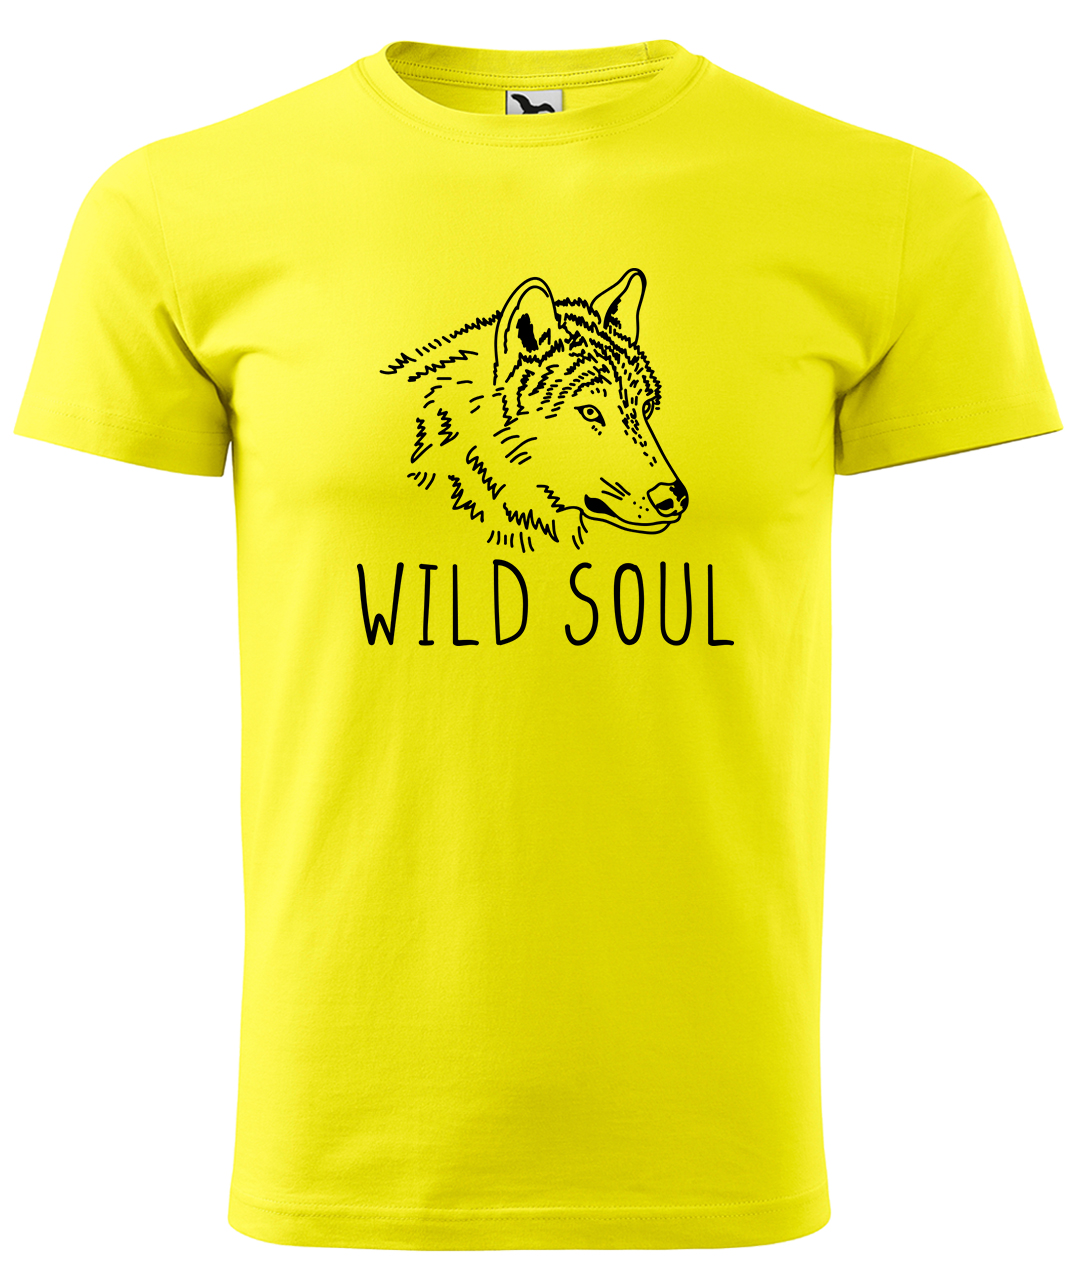 Dětské tričko s vlkem - Wild soul Velikost: 4 roky / 110 cm, Barva: Žlutá (04), Délka rukávu: Krátký rukáv